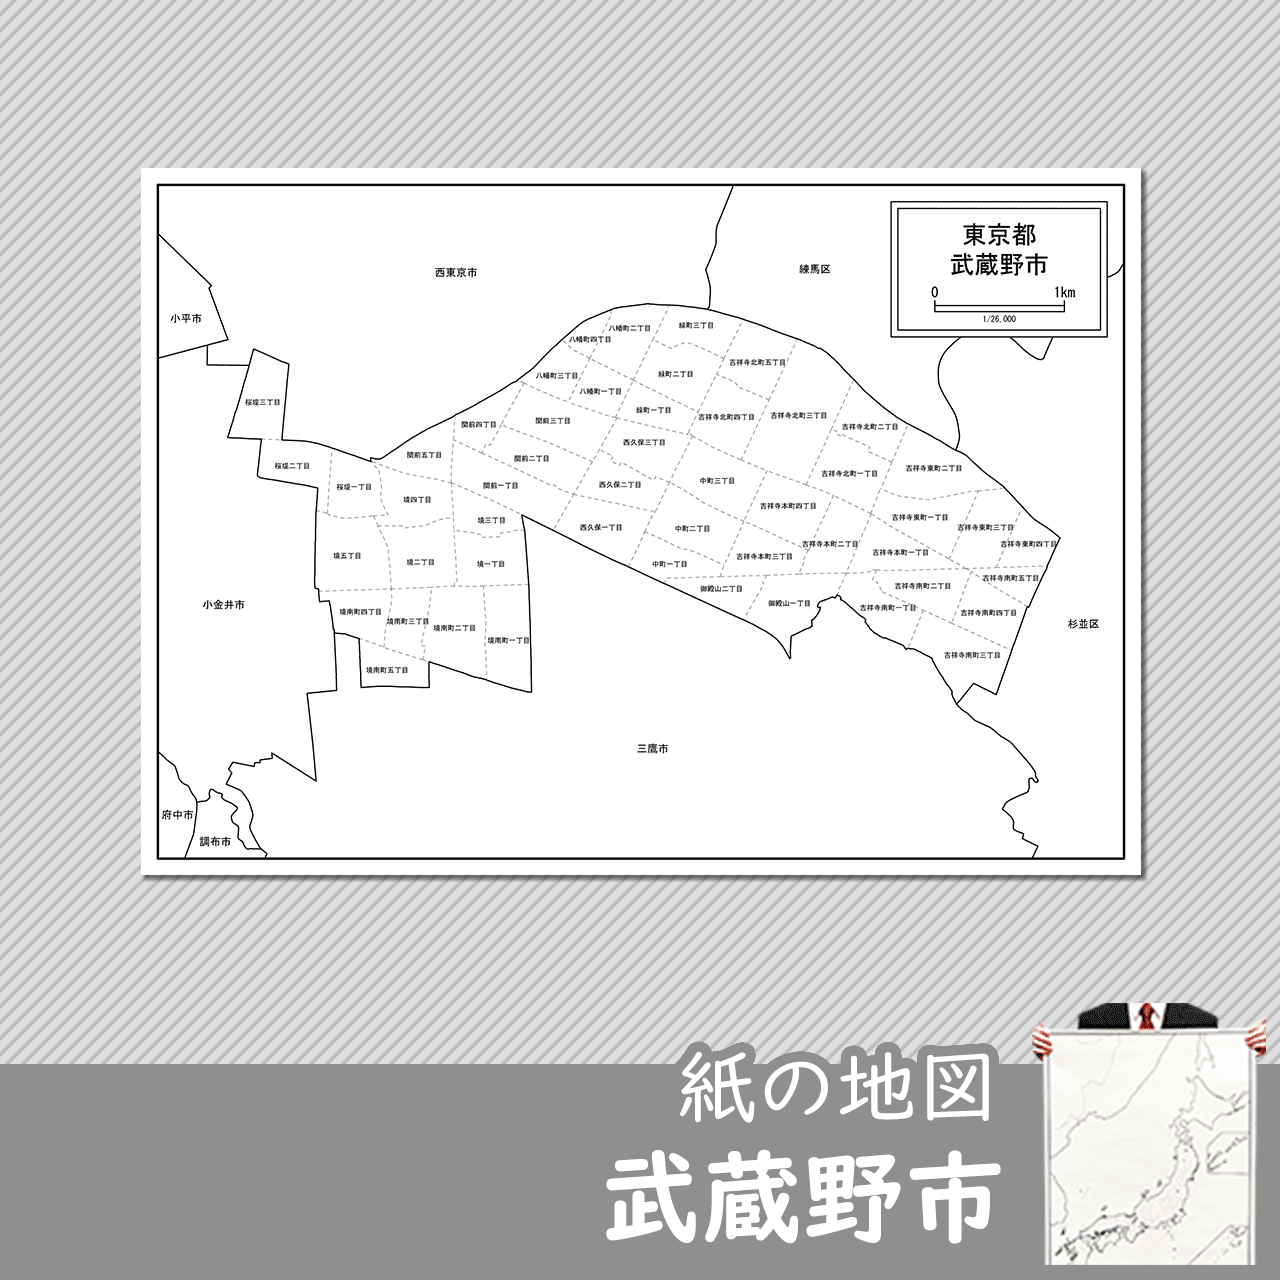 武蔵野市の白地図